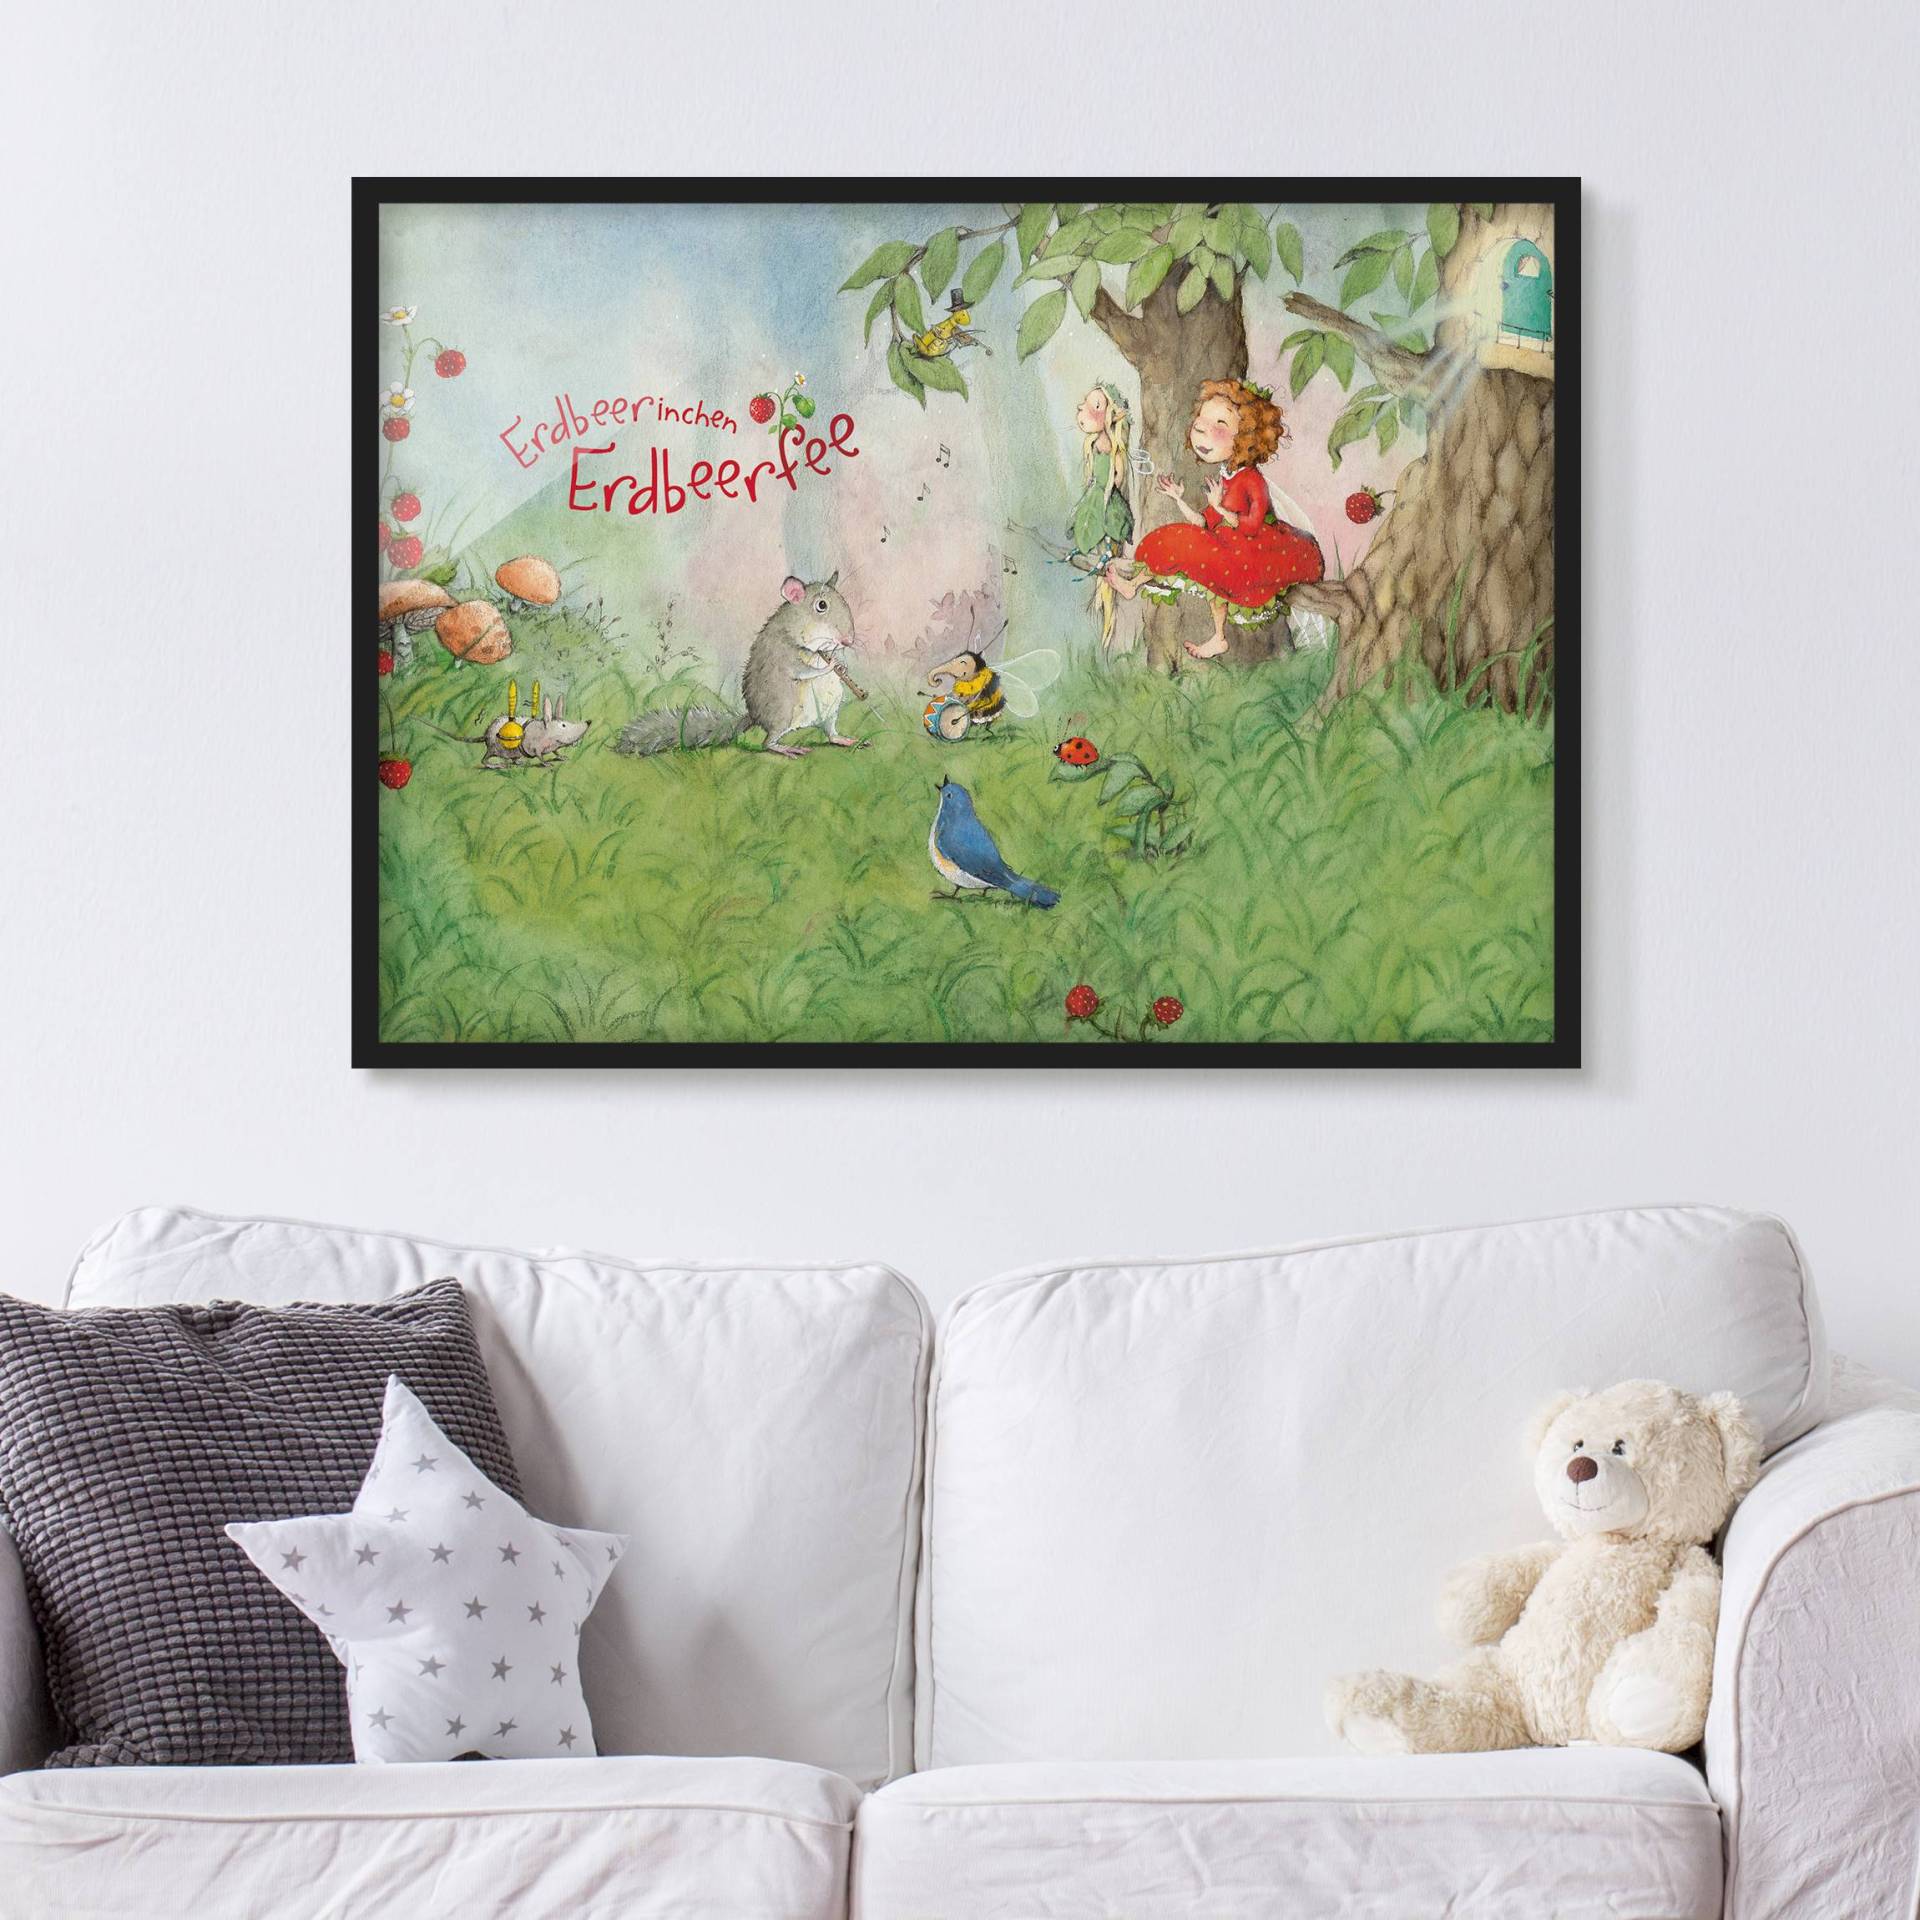 Kinderzimmer Bild mit Rahmen Erdbeerinchen Erdbeerfee - Zusammen Musizieren von Klebefieber